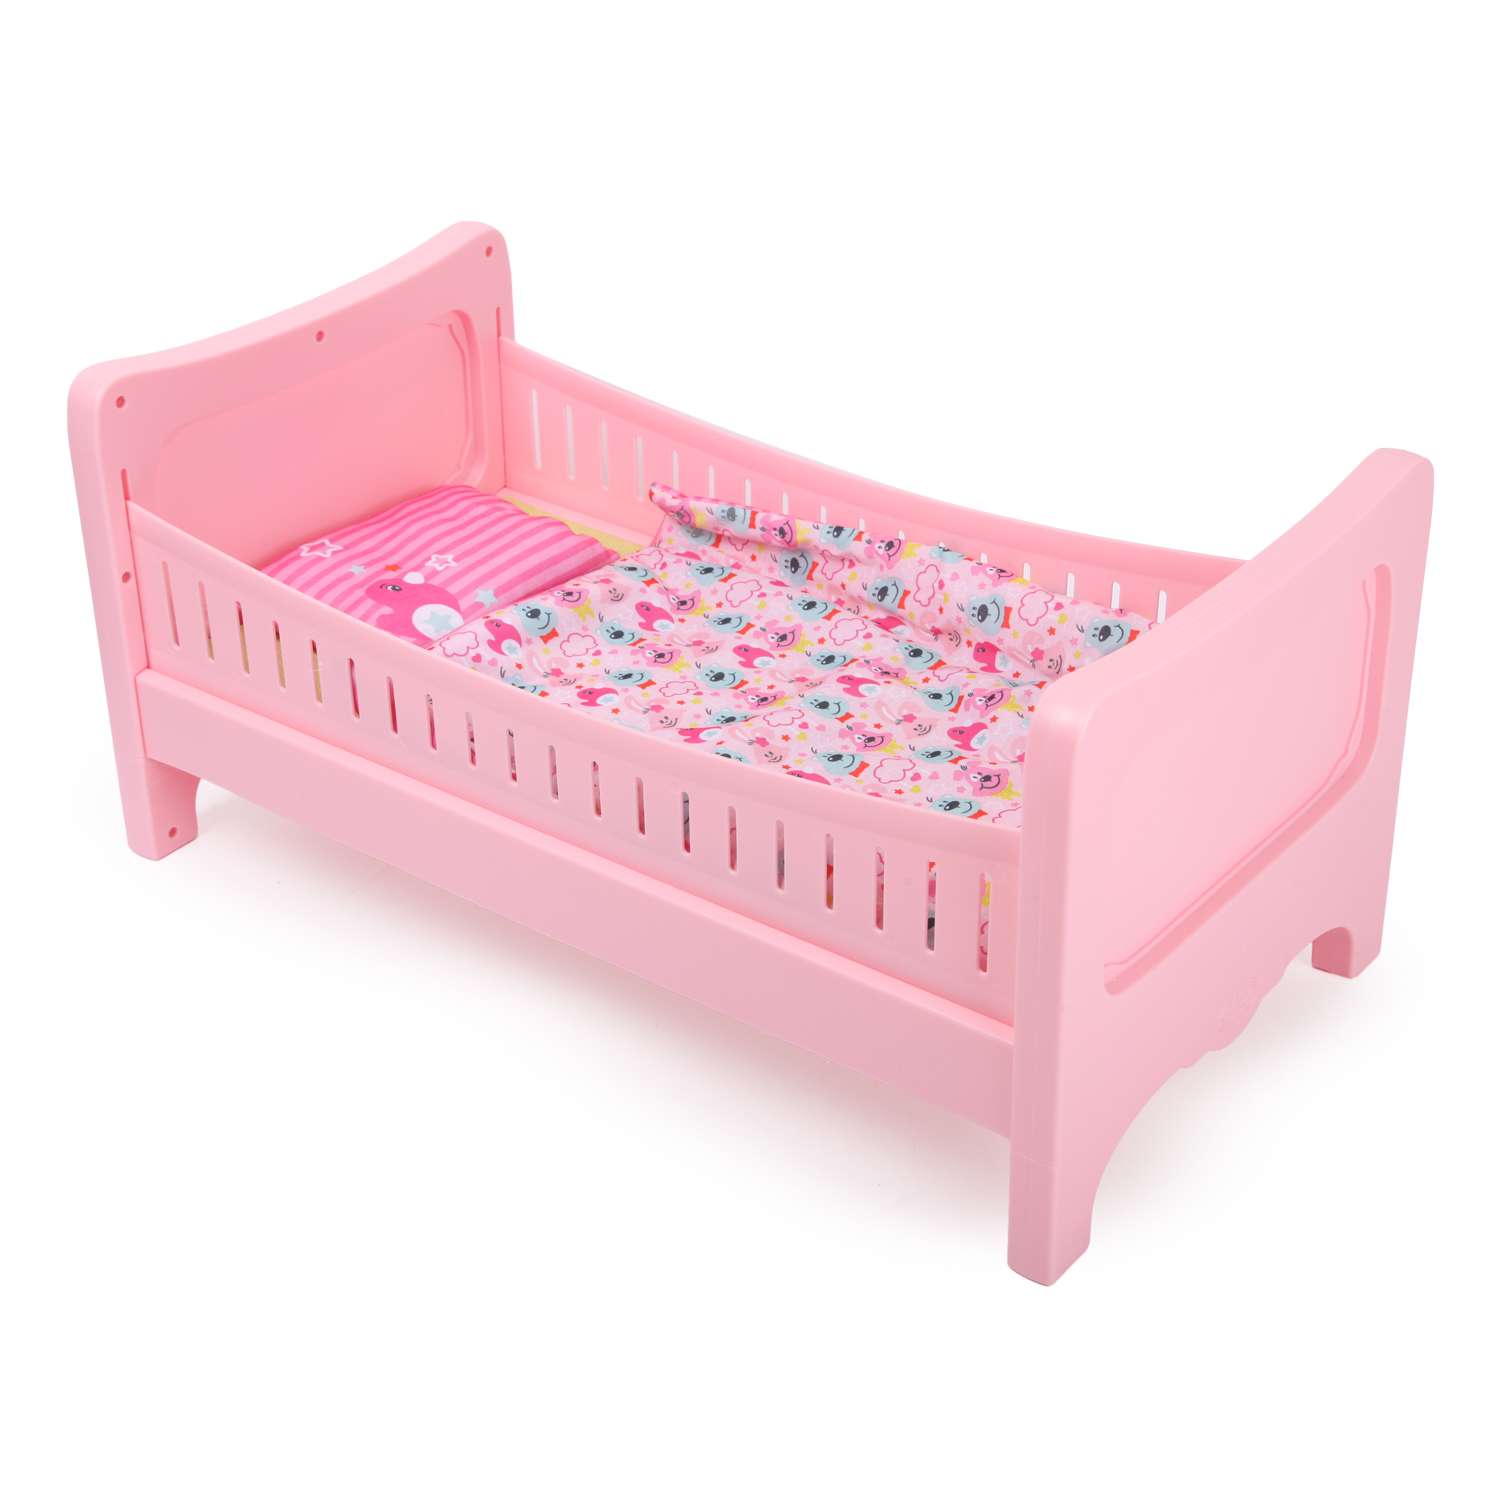 Набор для куклы Zapf Creation Baby Born кровать 824-399 824-399 - фото 1